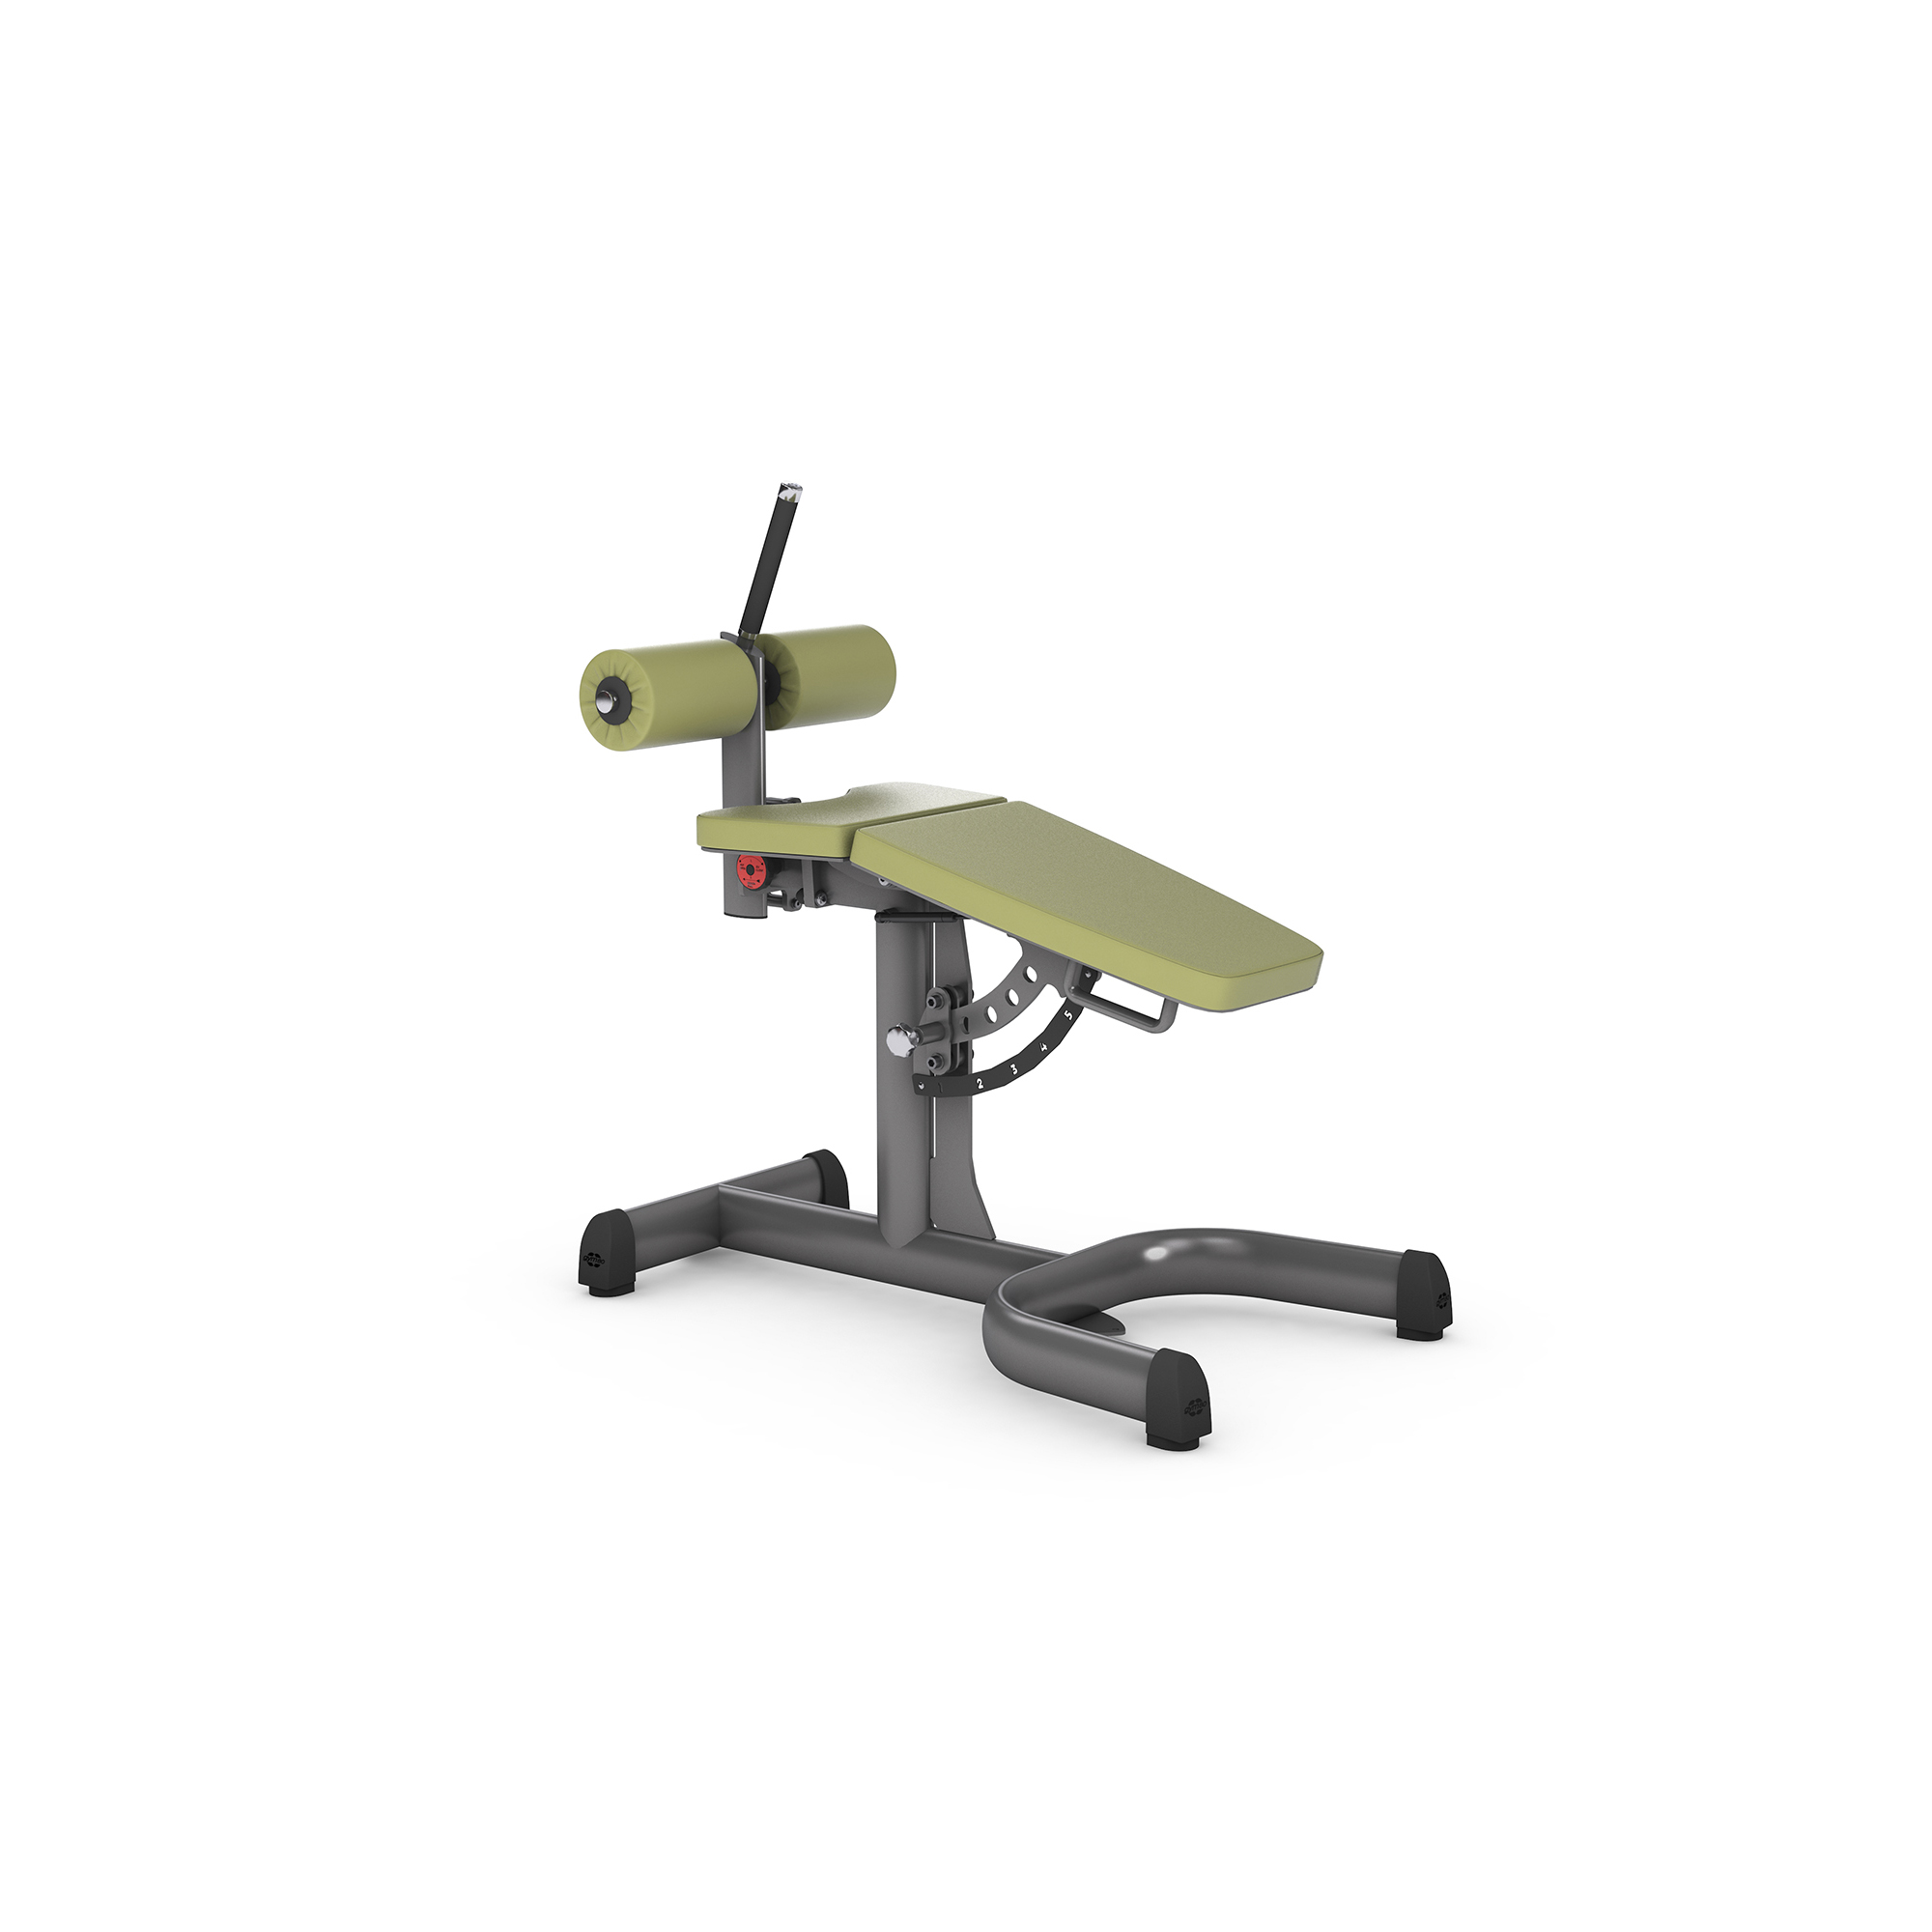 Brug gym80 Adjustable Roman Chair Mavebænk til en forbedret oplevelse